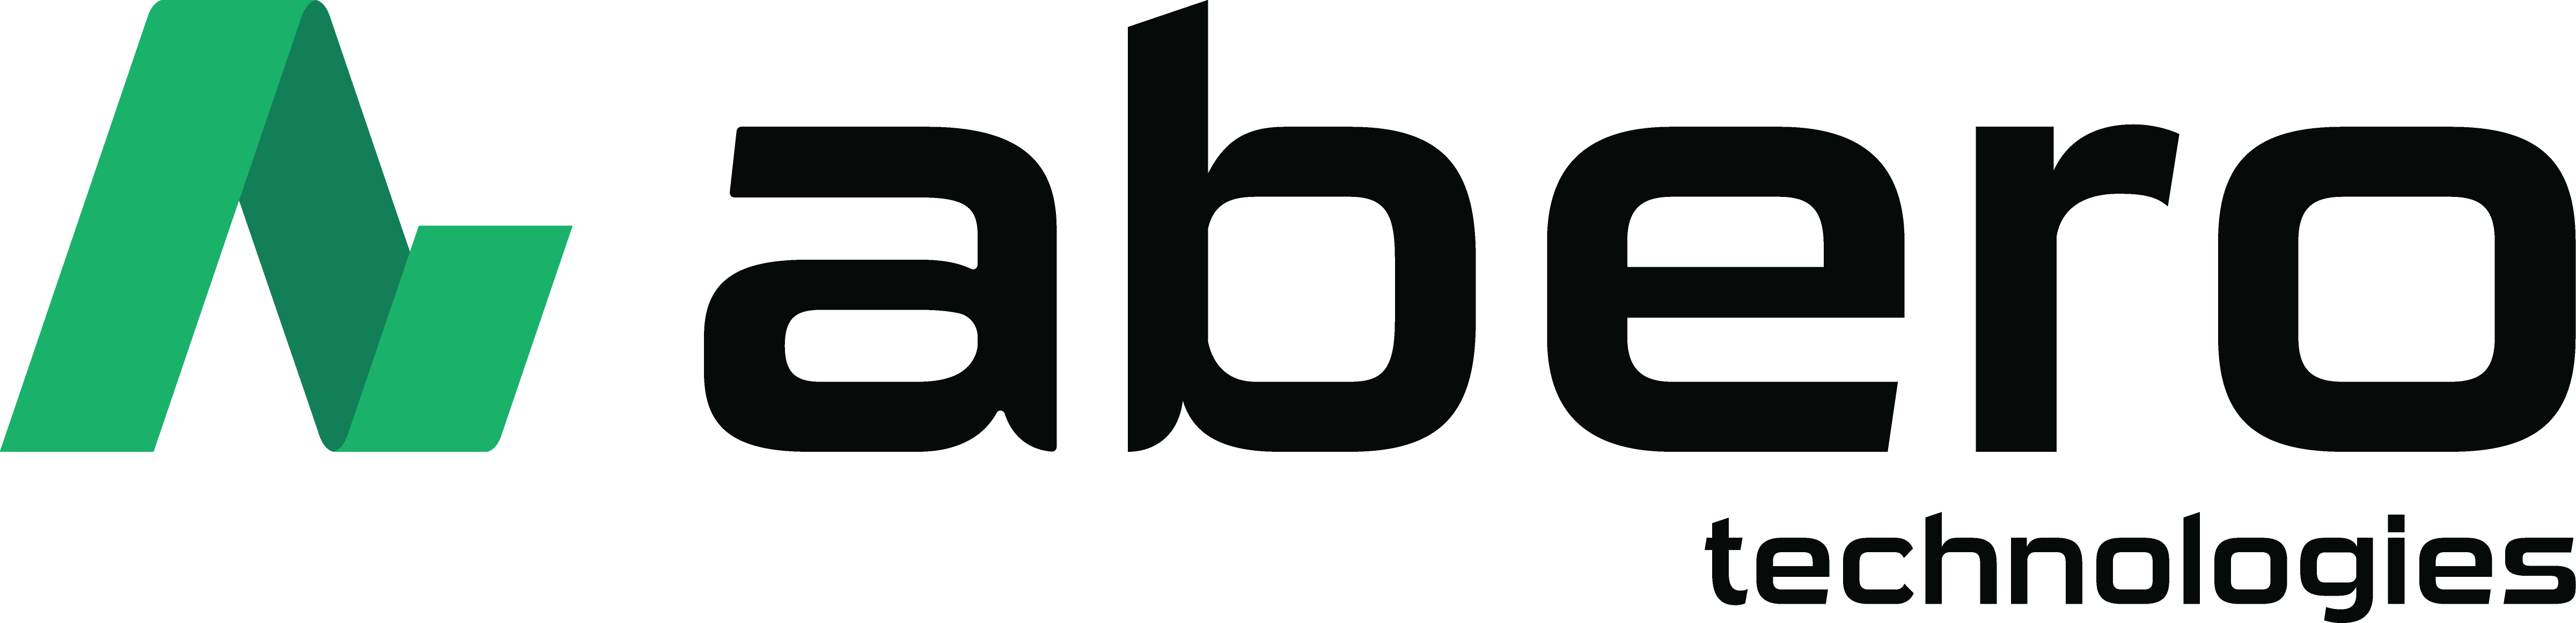 Abero_Full-Logo_Horizontal_Black@4x-3